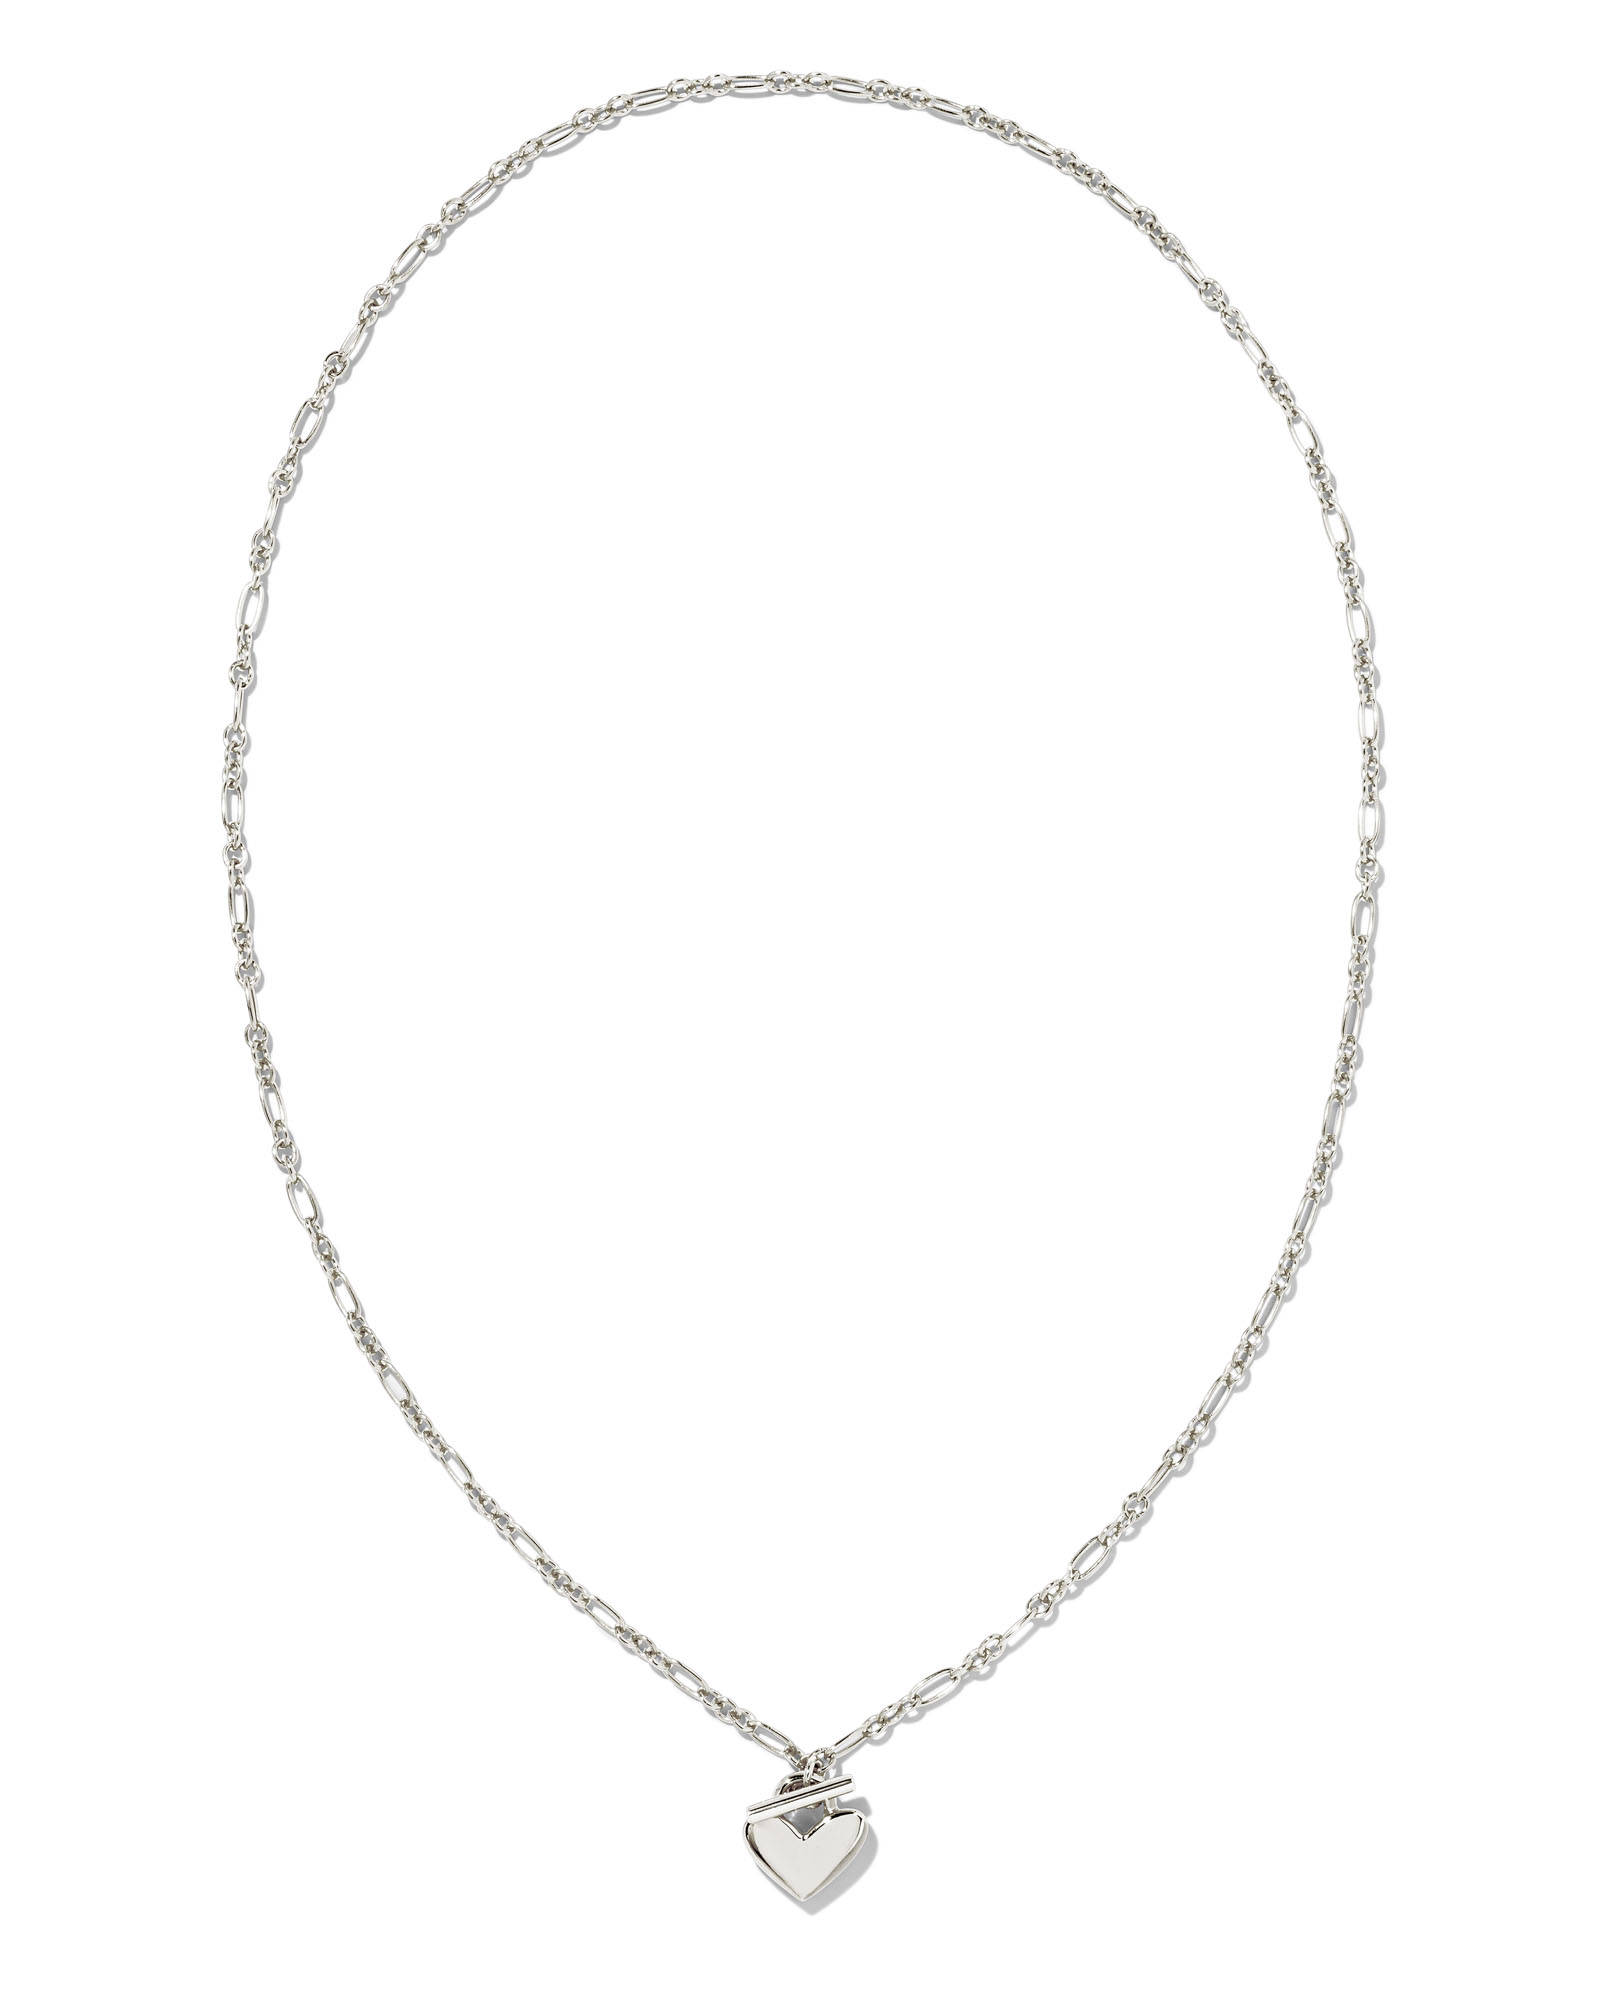 Heart Padlock Pendant Necklace in Sterling Silver | Kendra Scott